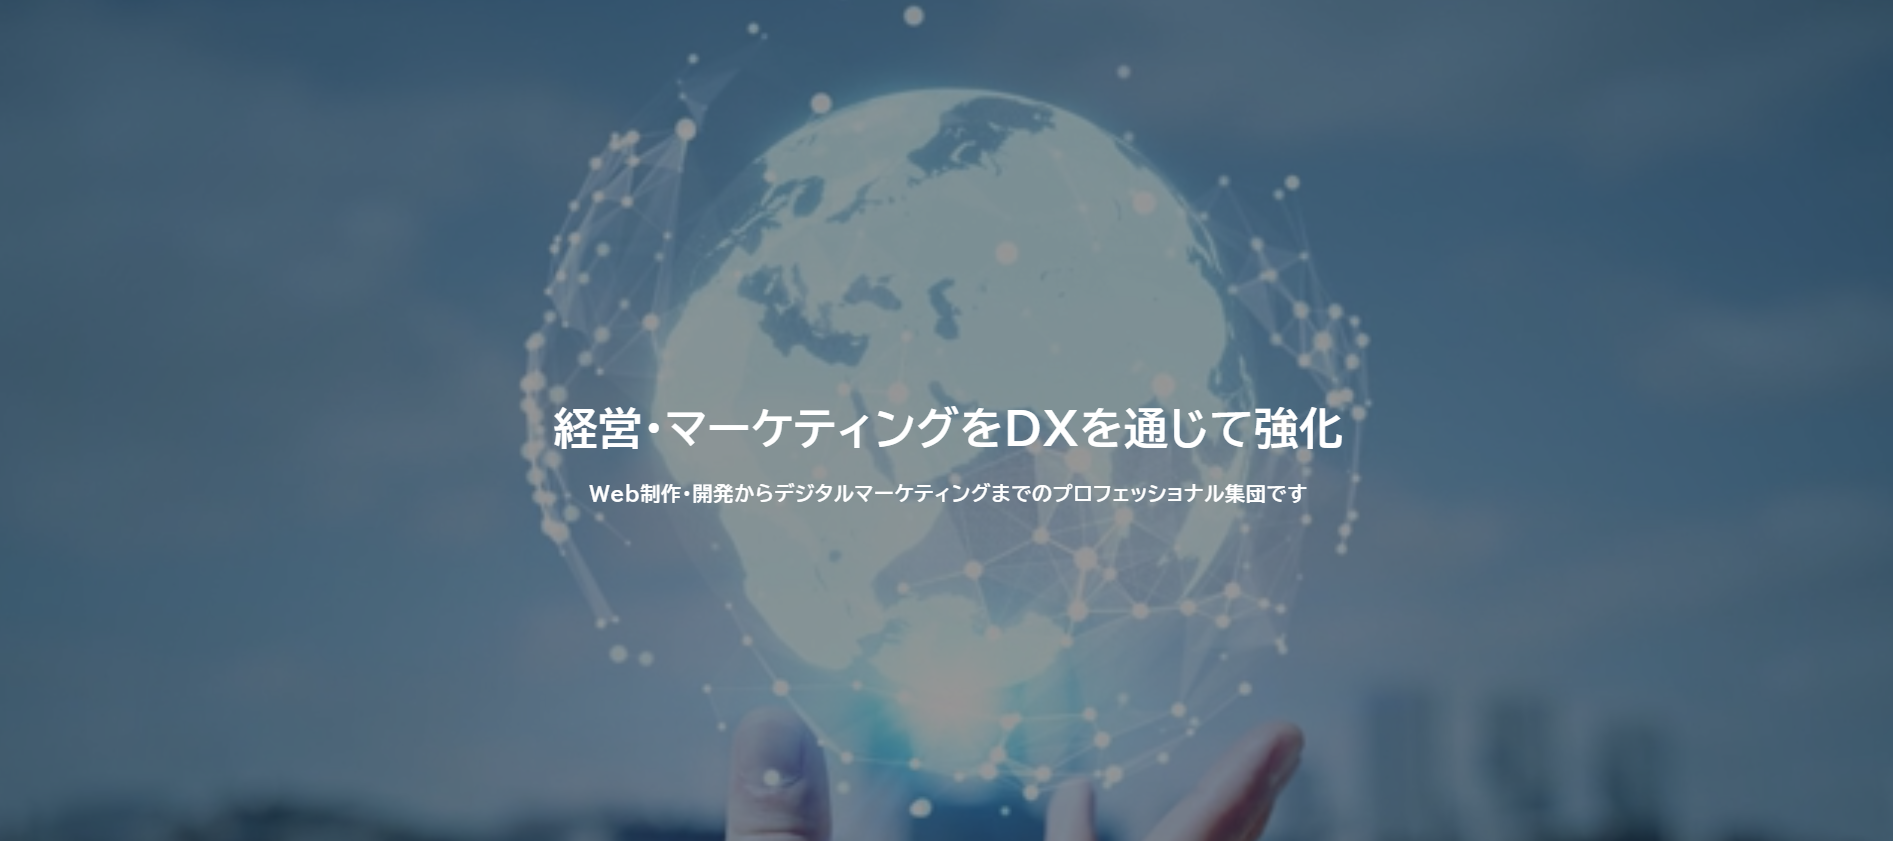 UDX株式会社のUDX株式会社:Web広告サービス